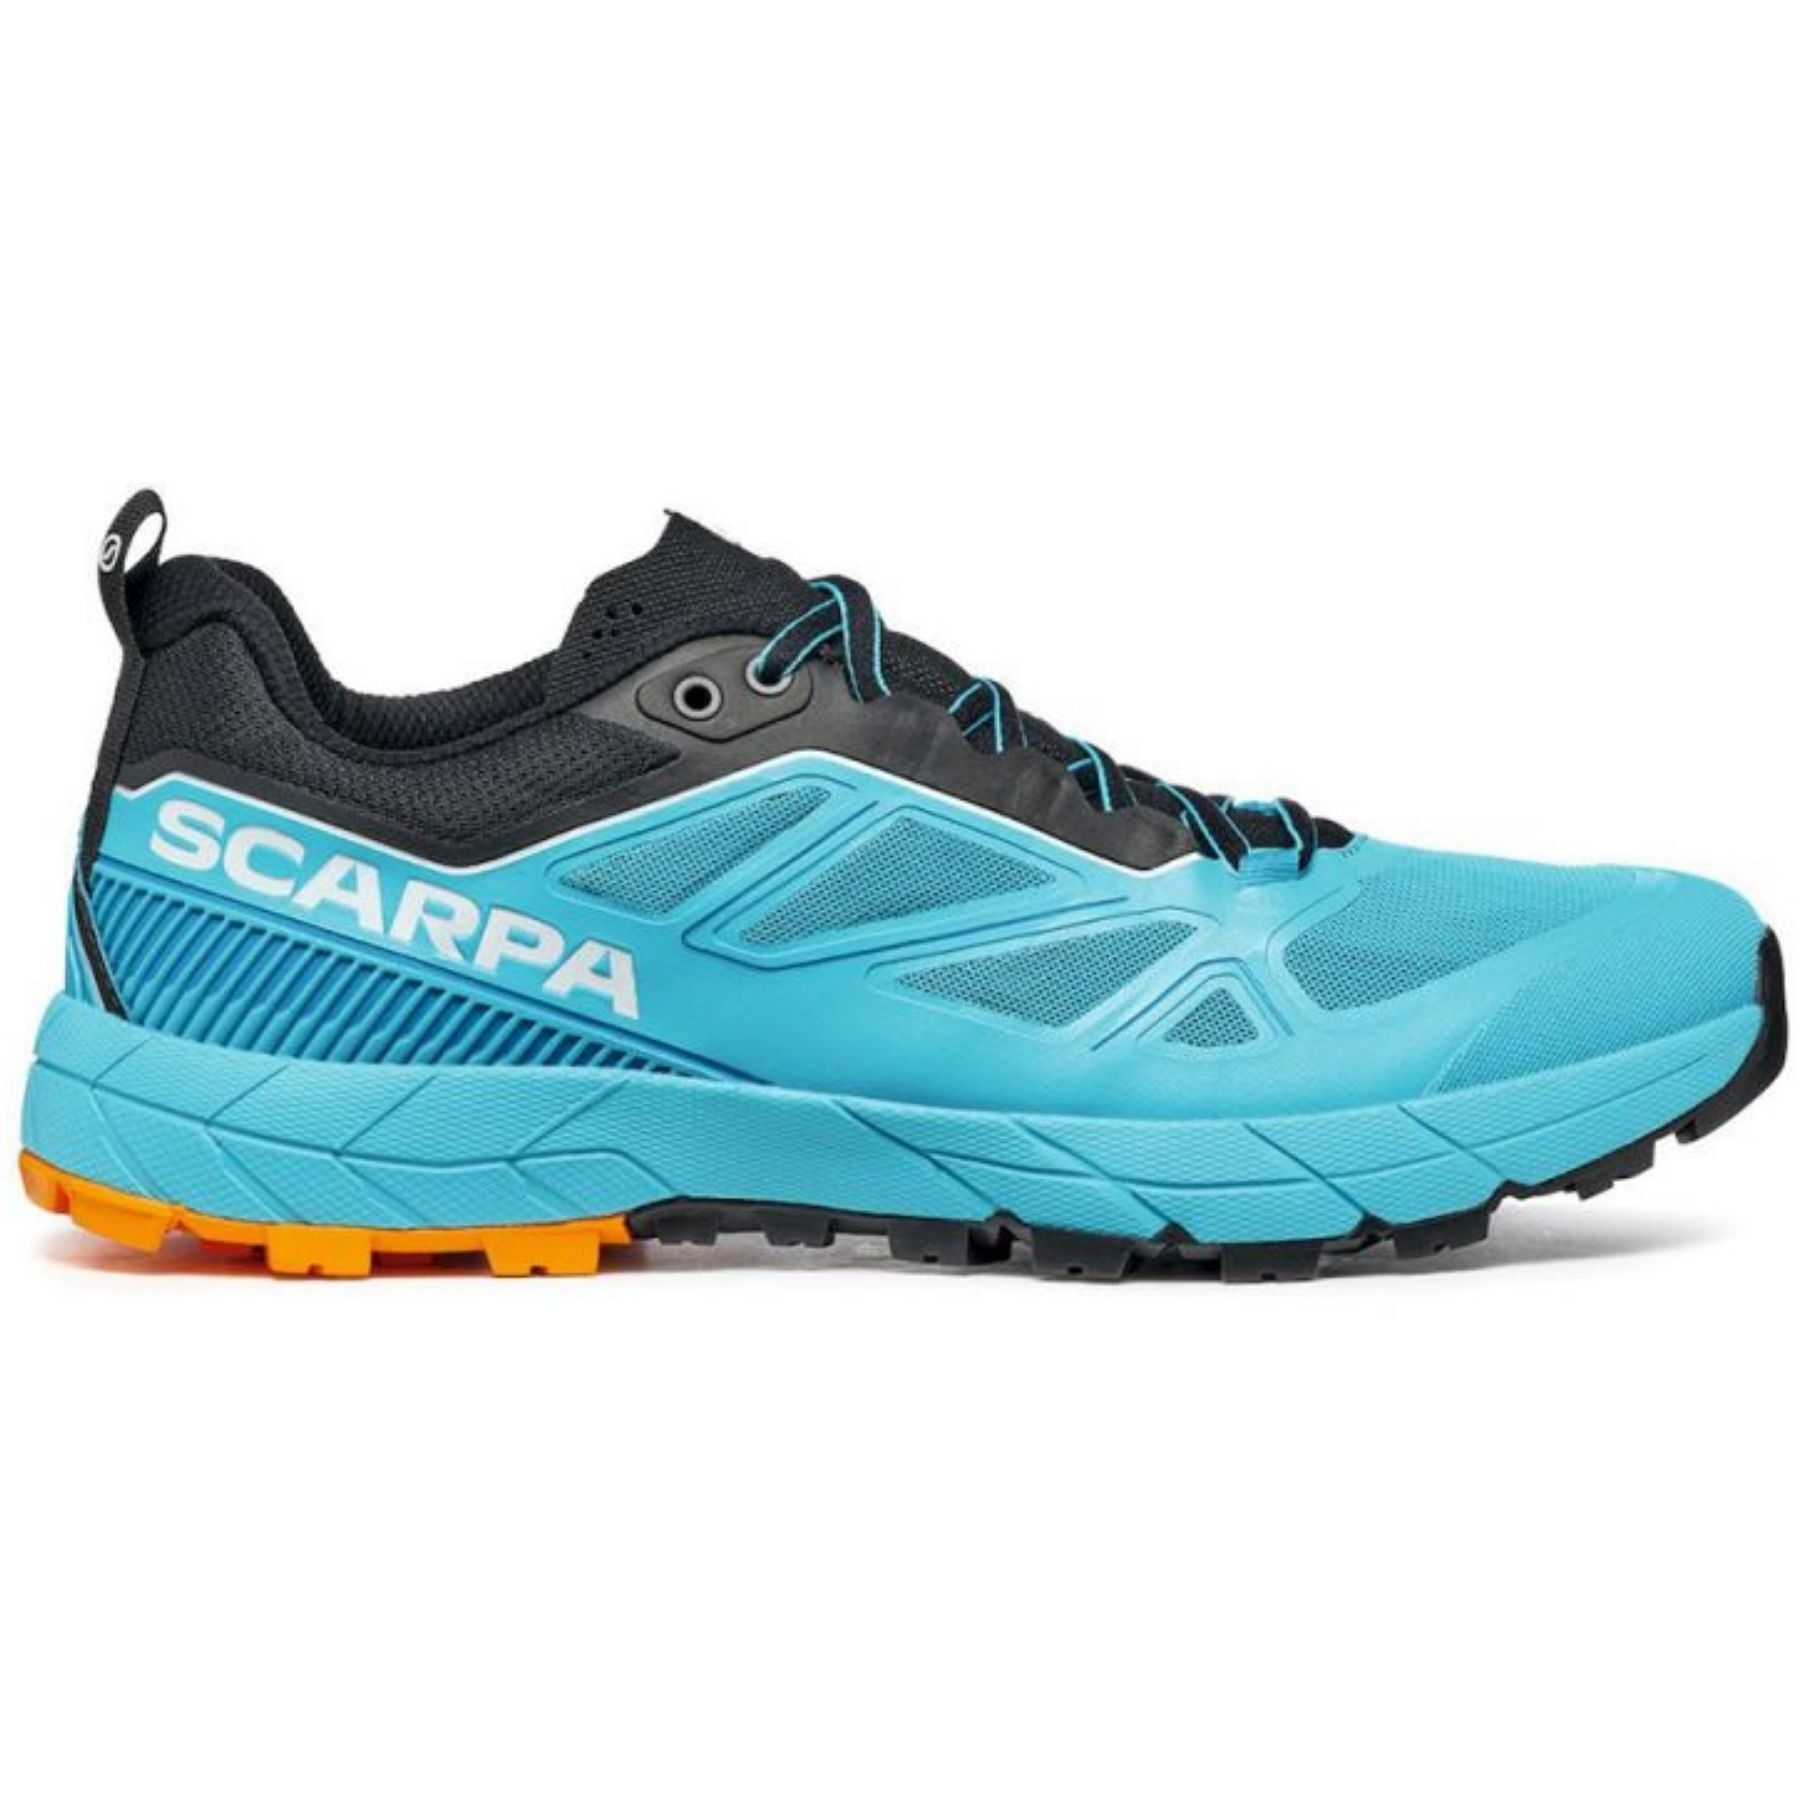 Scarpa Rapid - Approach shoes - Men's